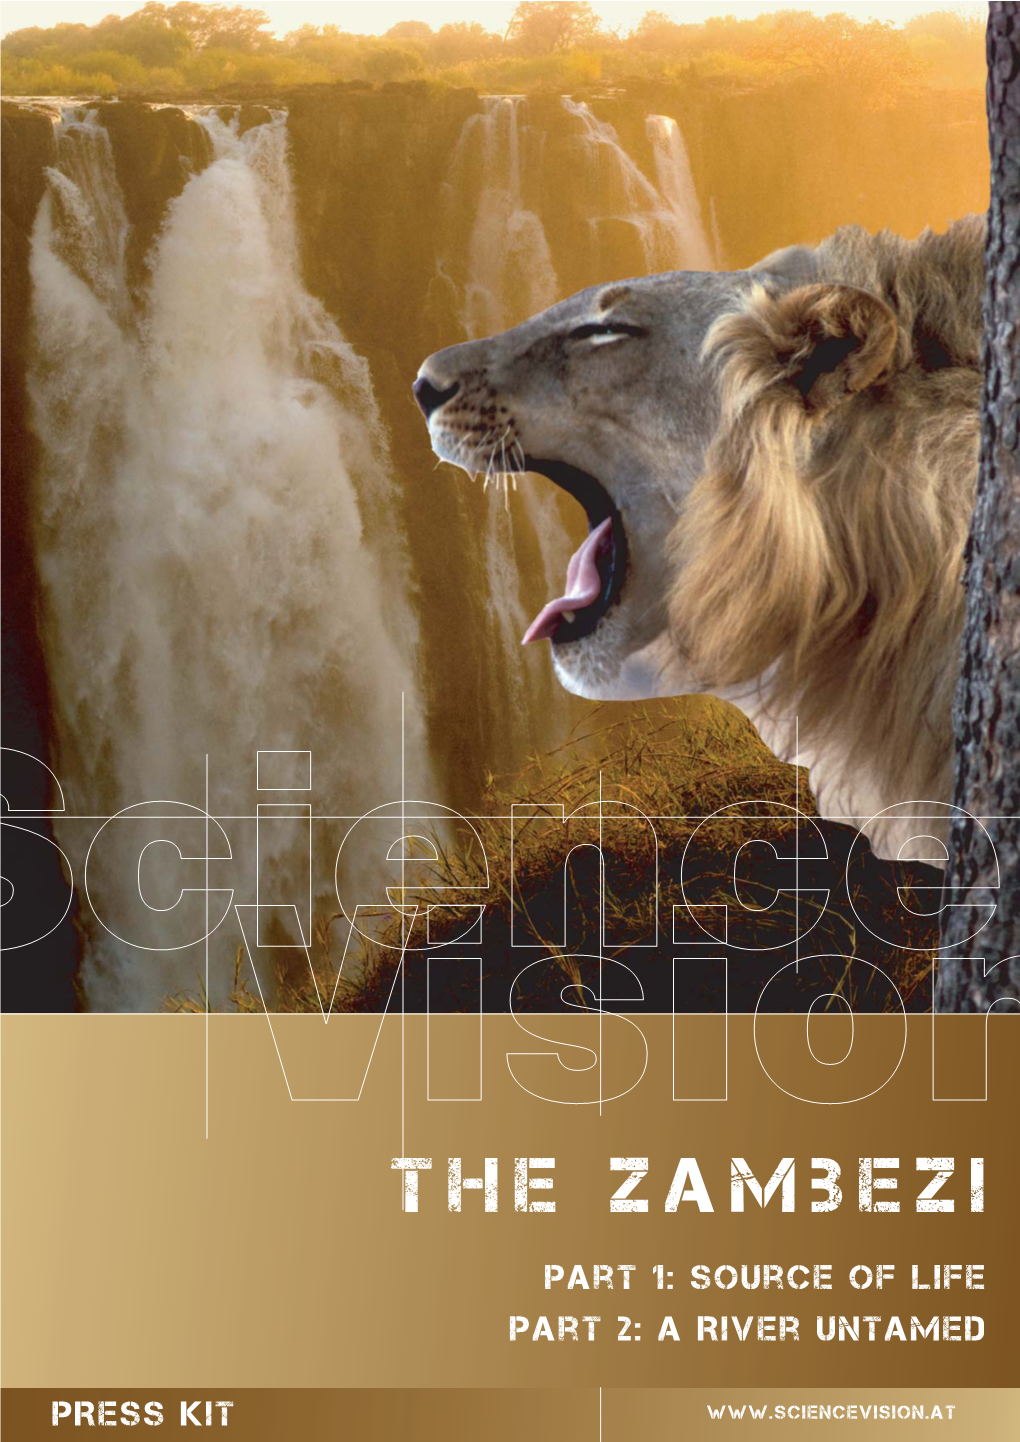 Press Kit Zambezi